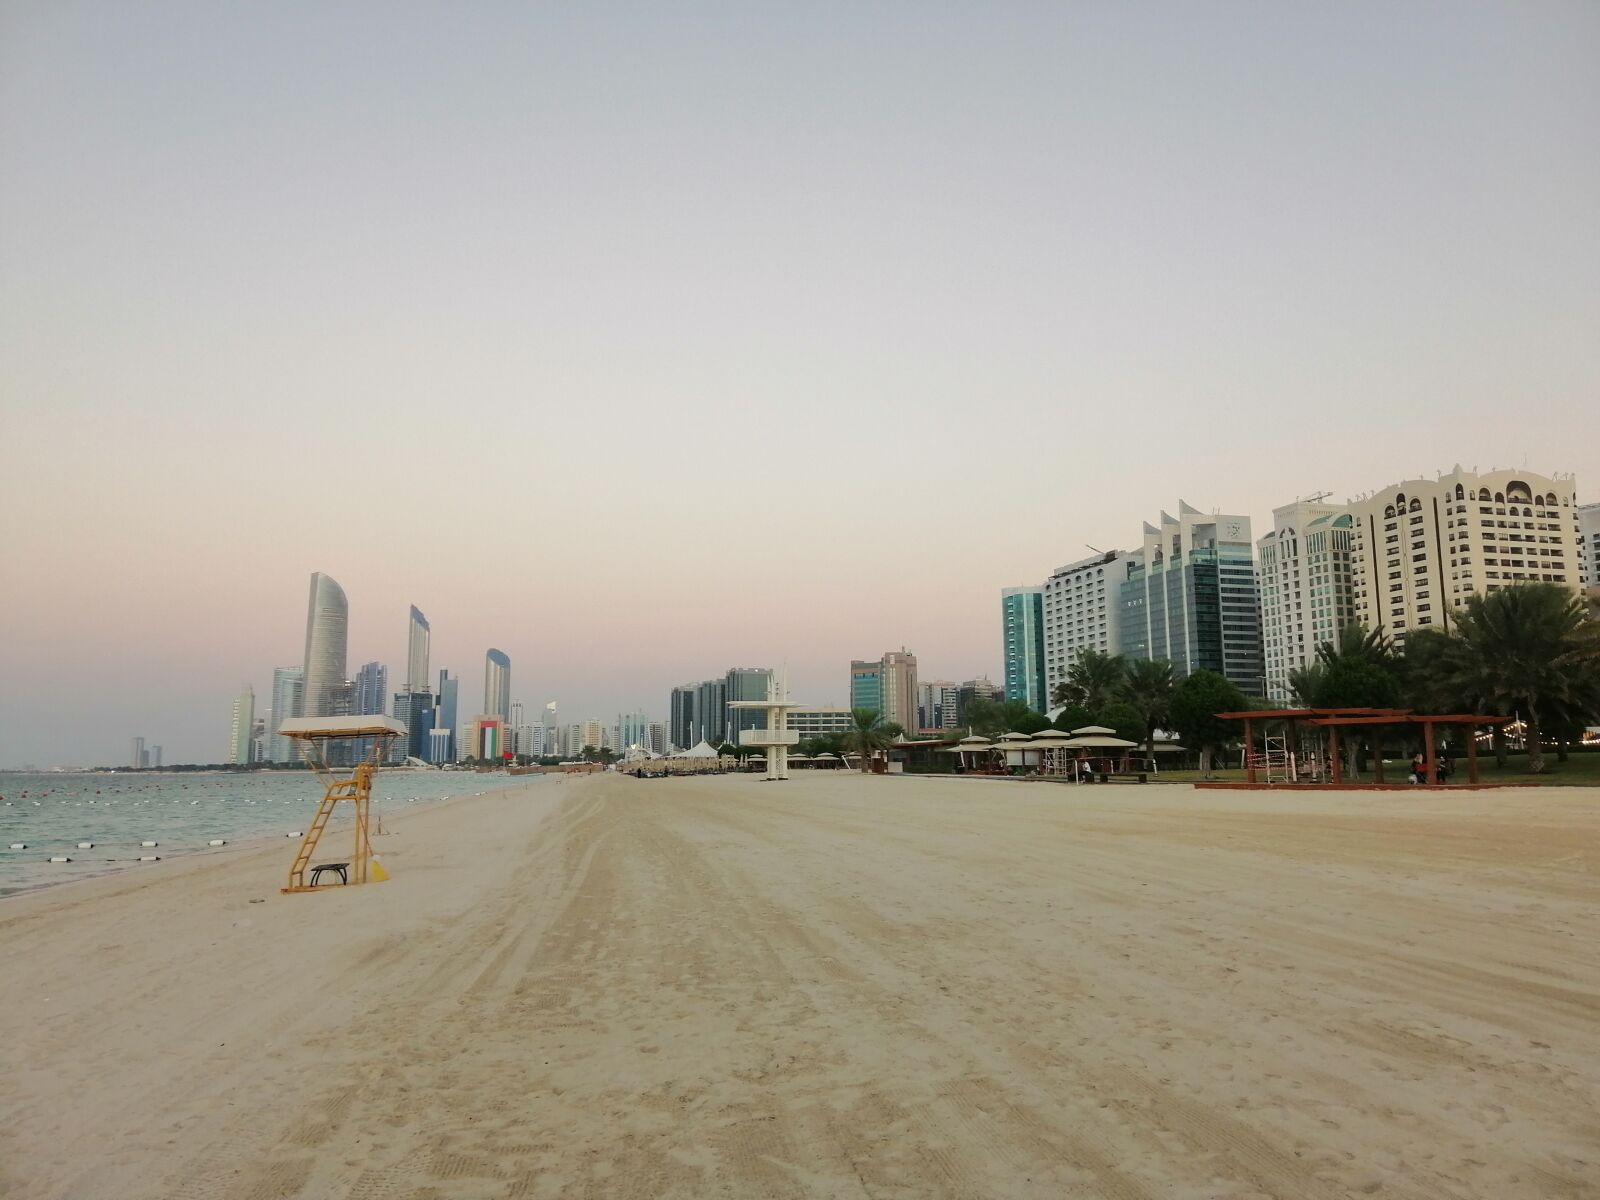 HUAWEI INE-LX1 sample photo. Corniche, beach, abu dhabi photography